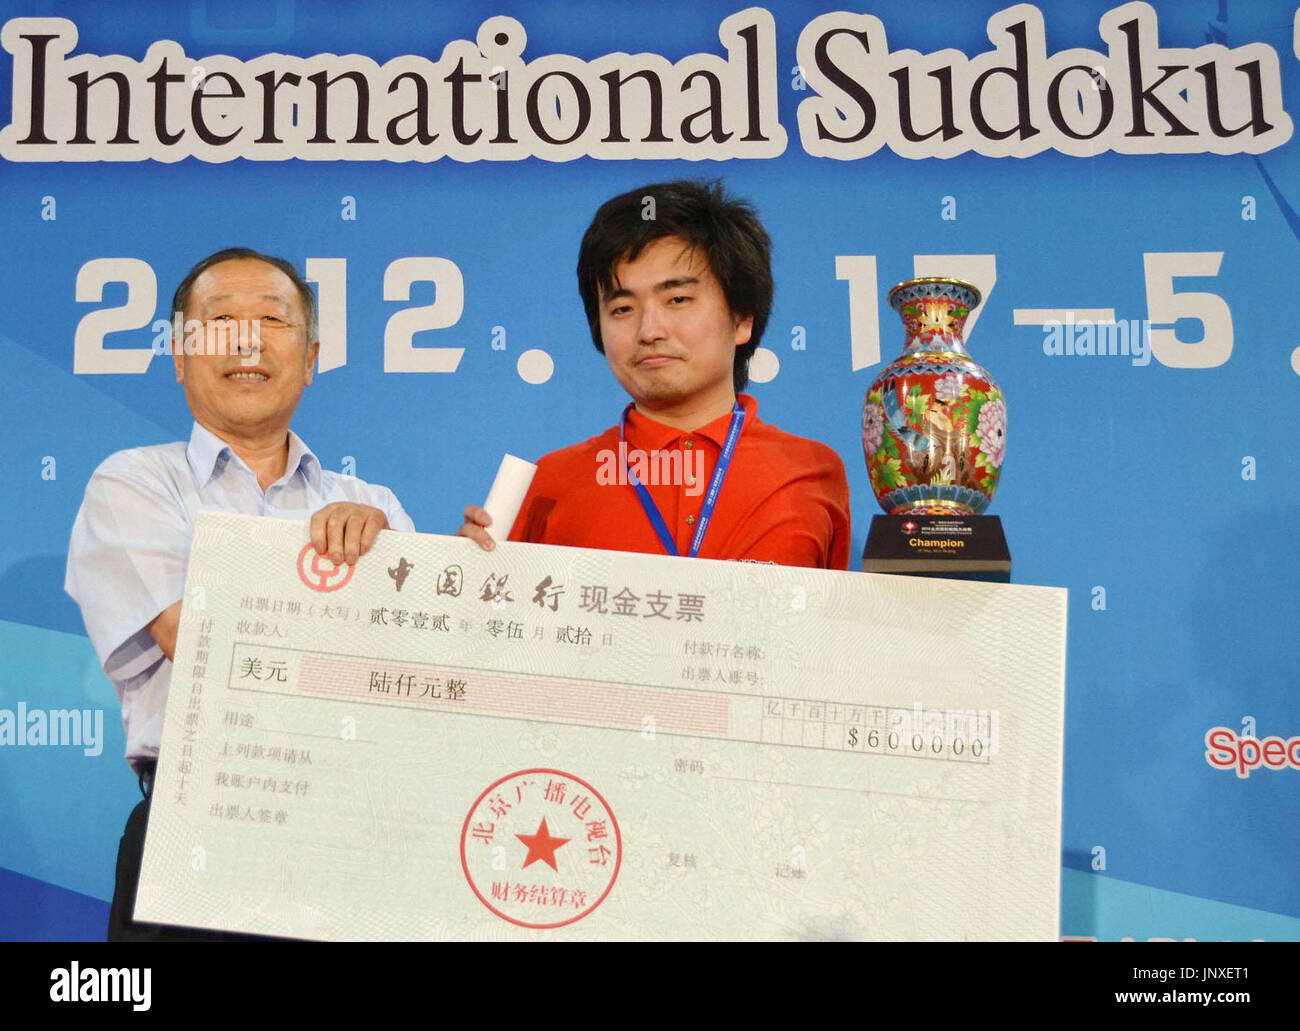 Prize Sudoku - Prize Sudoku Competitions